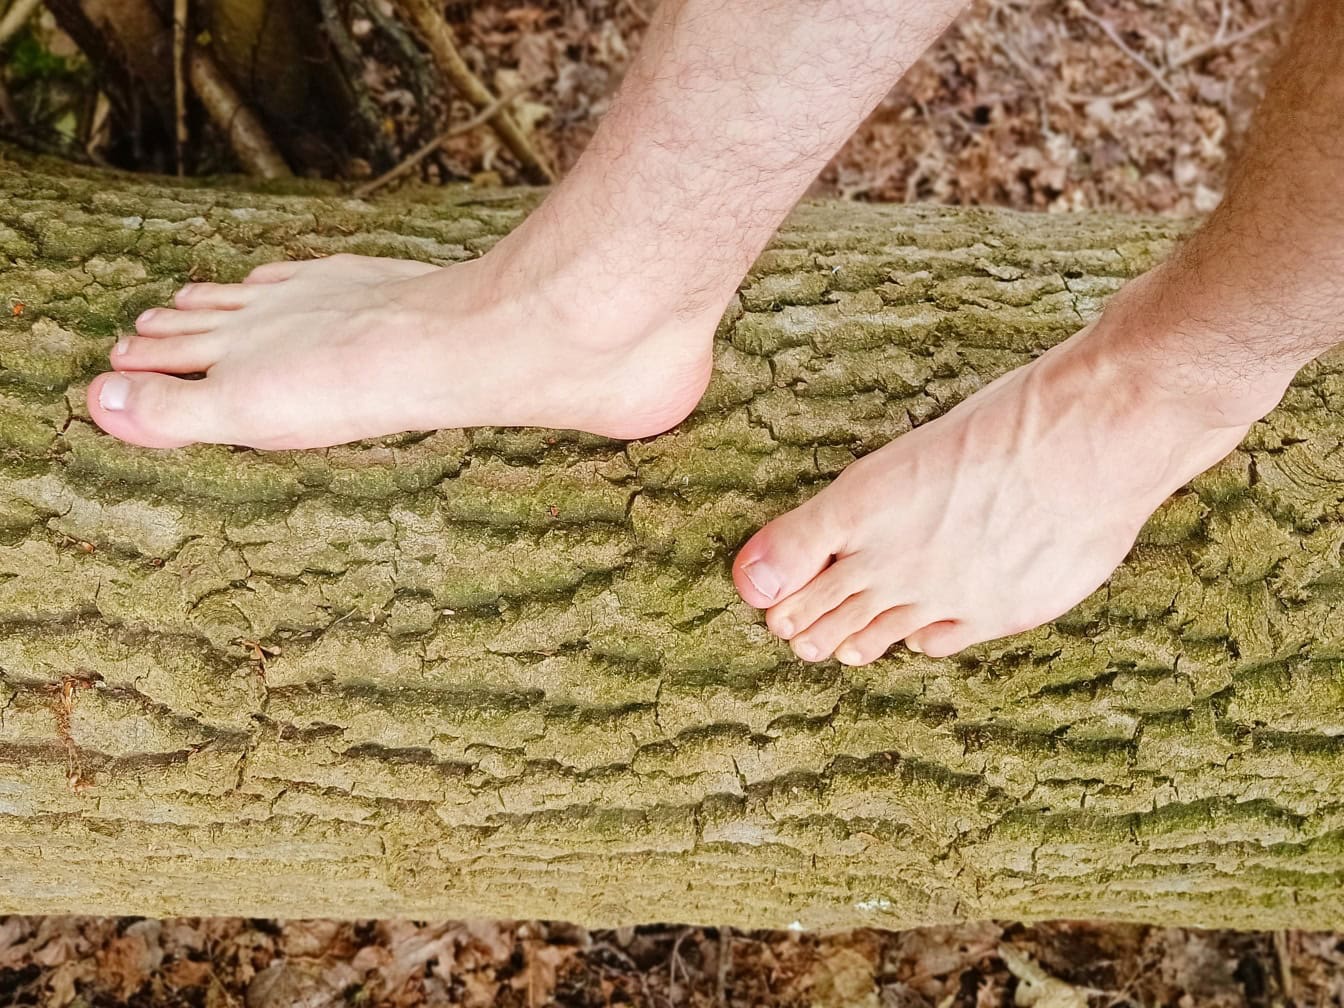 Pieds nus d’une personne sur un tronc d’arbre